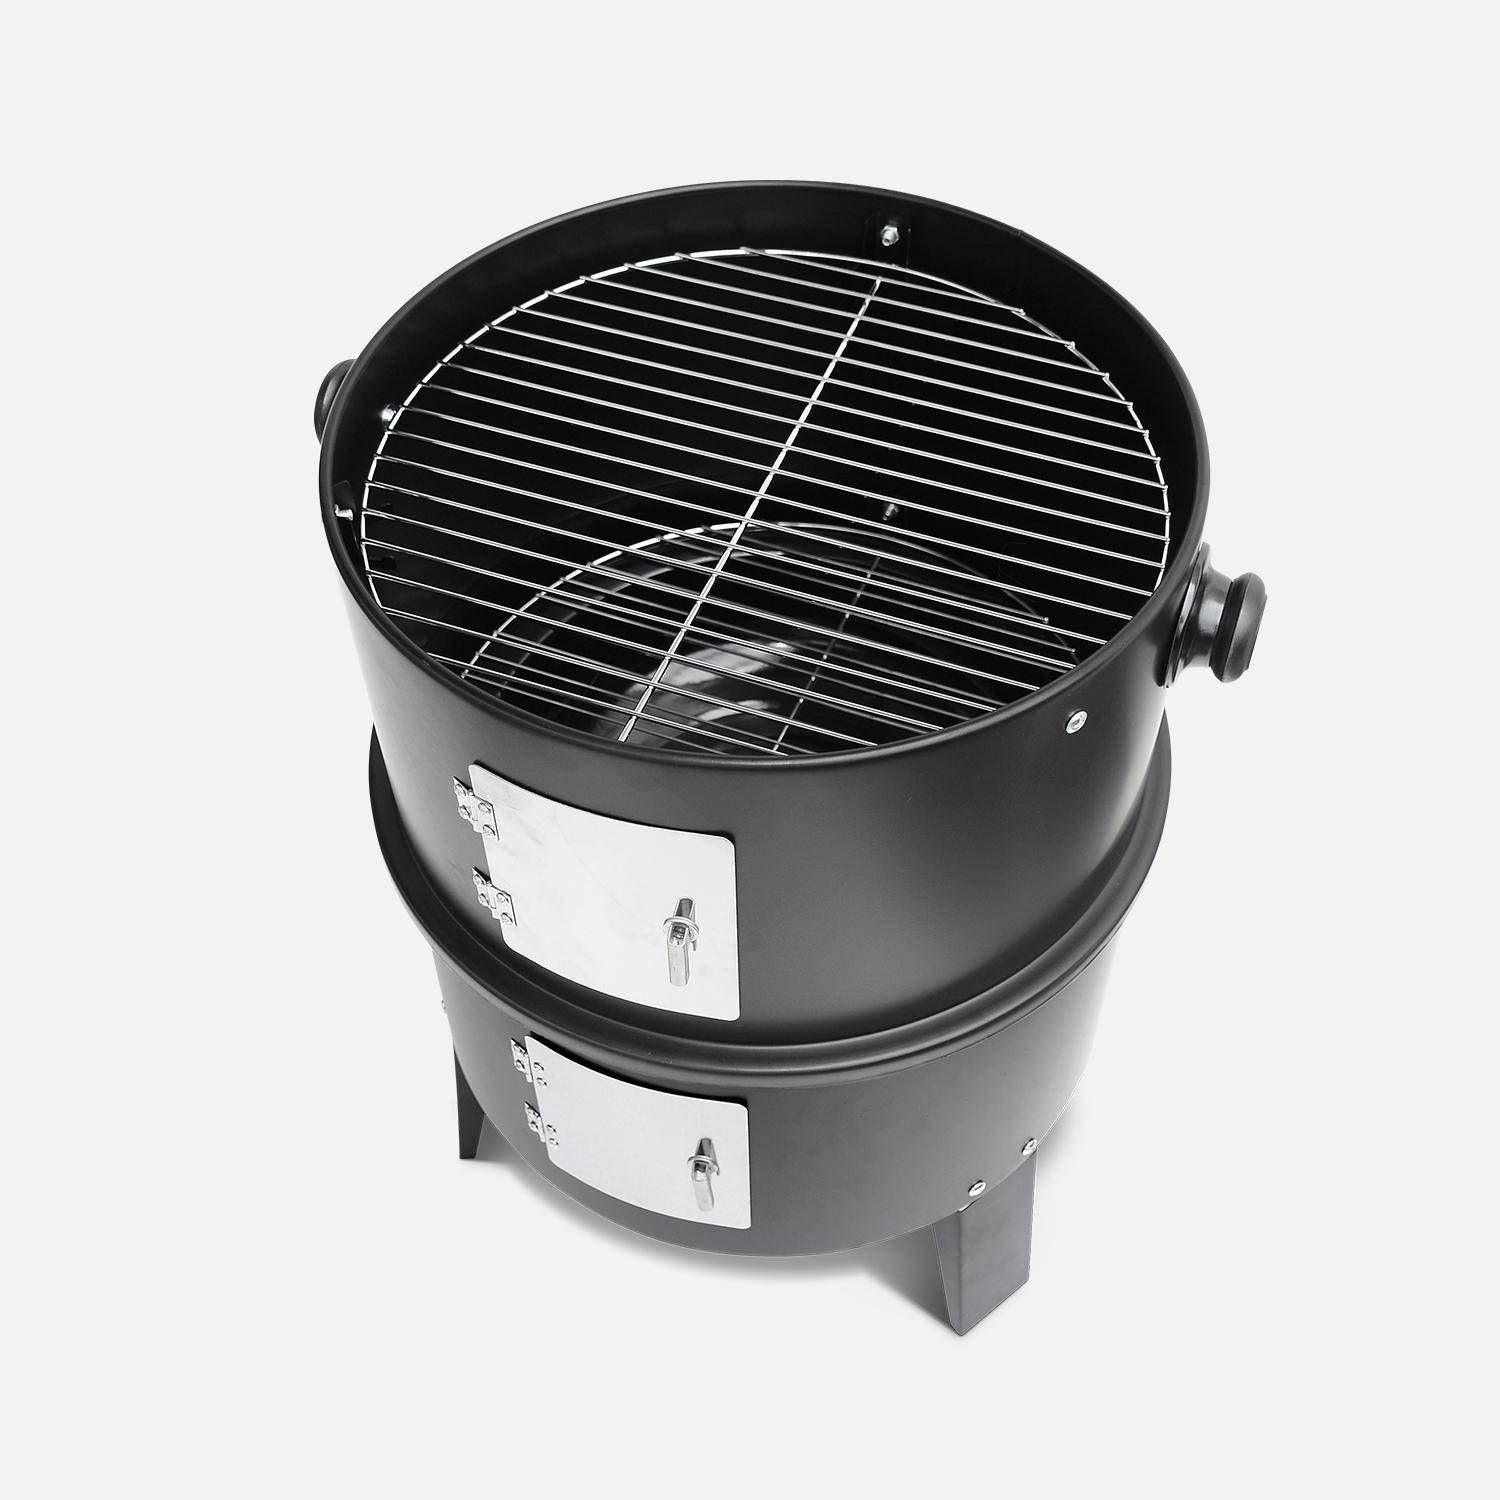 Houtskoolbarbecue - Edouard - Smoker met beluchter, rookoven, grill, rookkast, zwart Photo5